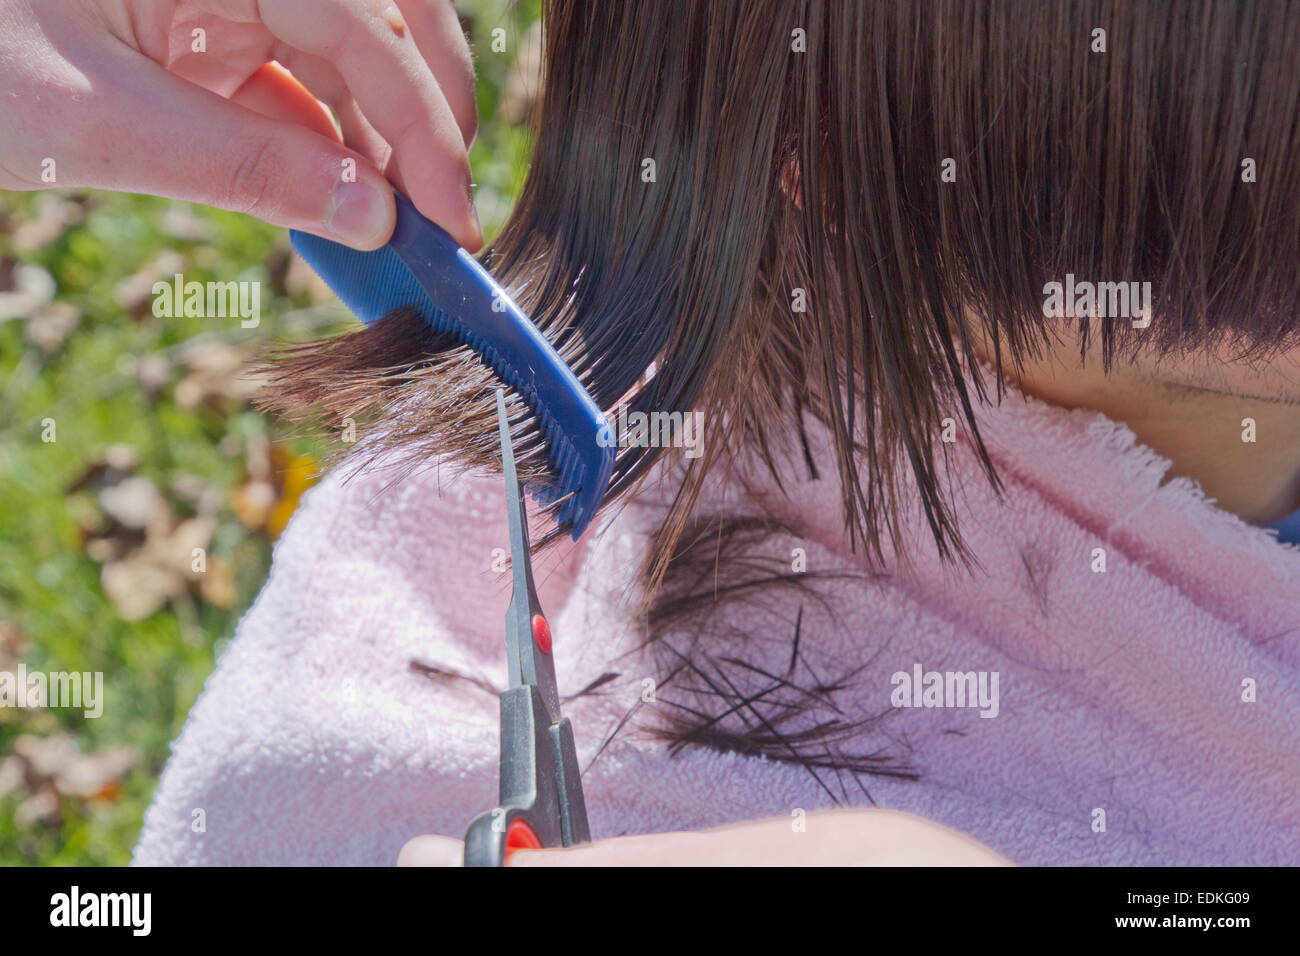 Chiudere fino a una giovane donna pettinatura e taglio del lungo, bagnato, capelli scuri di un giovane uomo fuori nell'erba su una soleggiata giornata autunnale Foto Stock